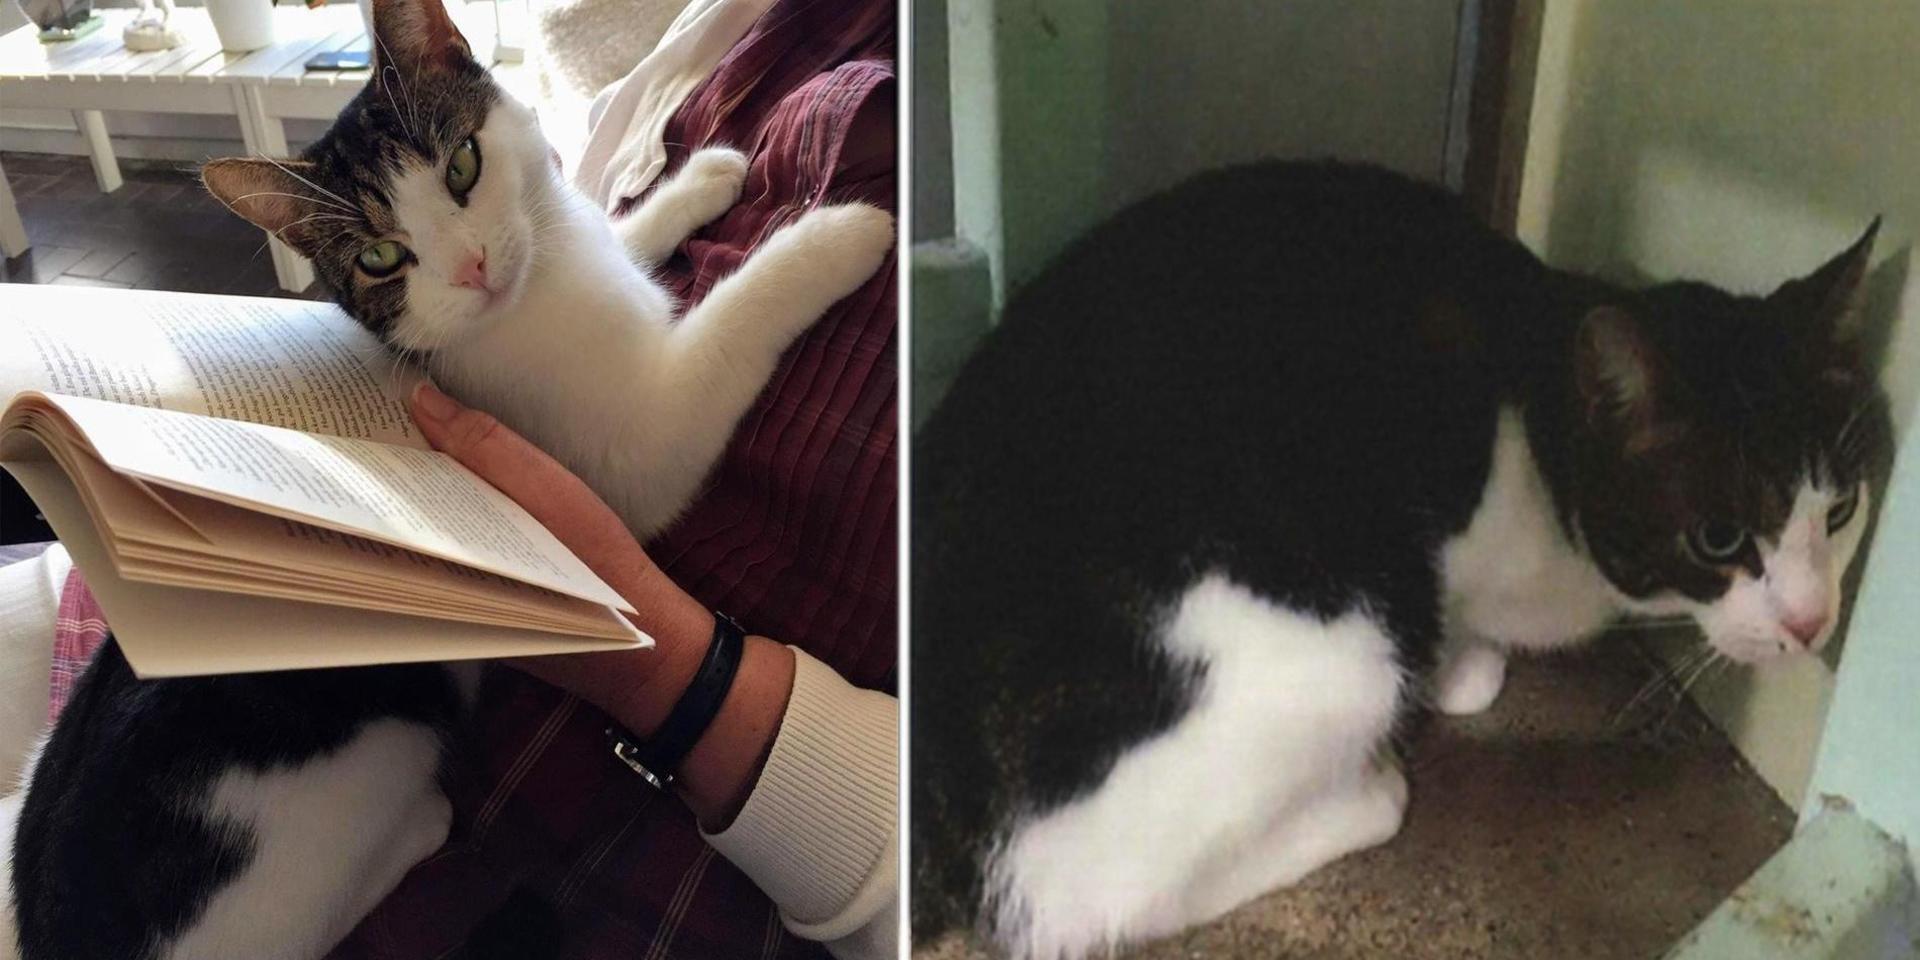 Katten Lisa (till vänster) och den infångade katten (till höger) är lika i färger och pälsmönster. Foto: Privat